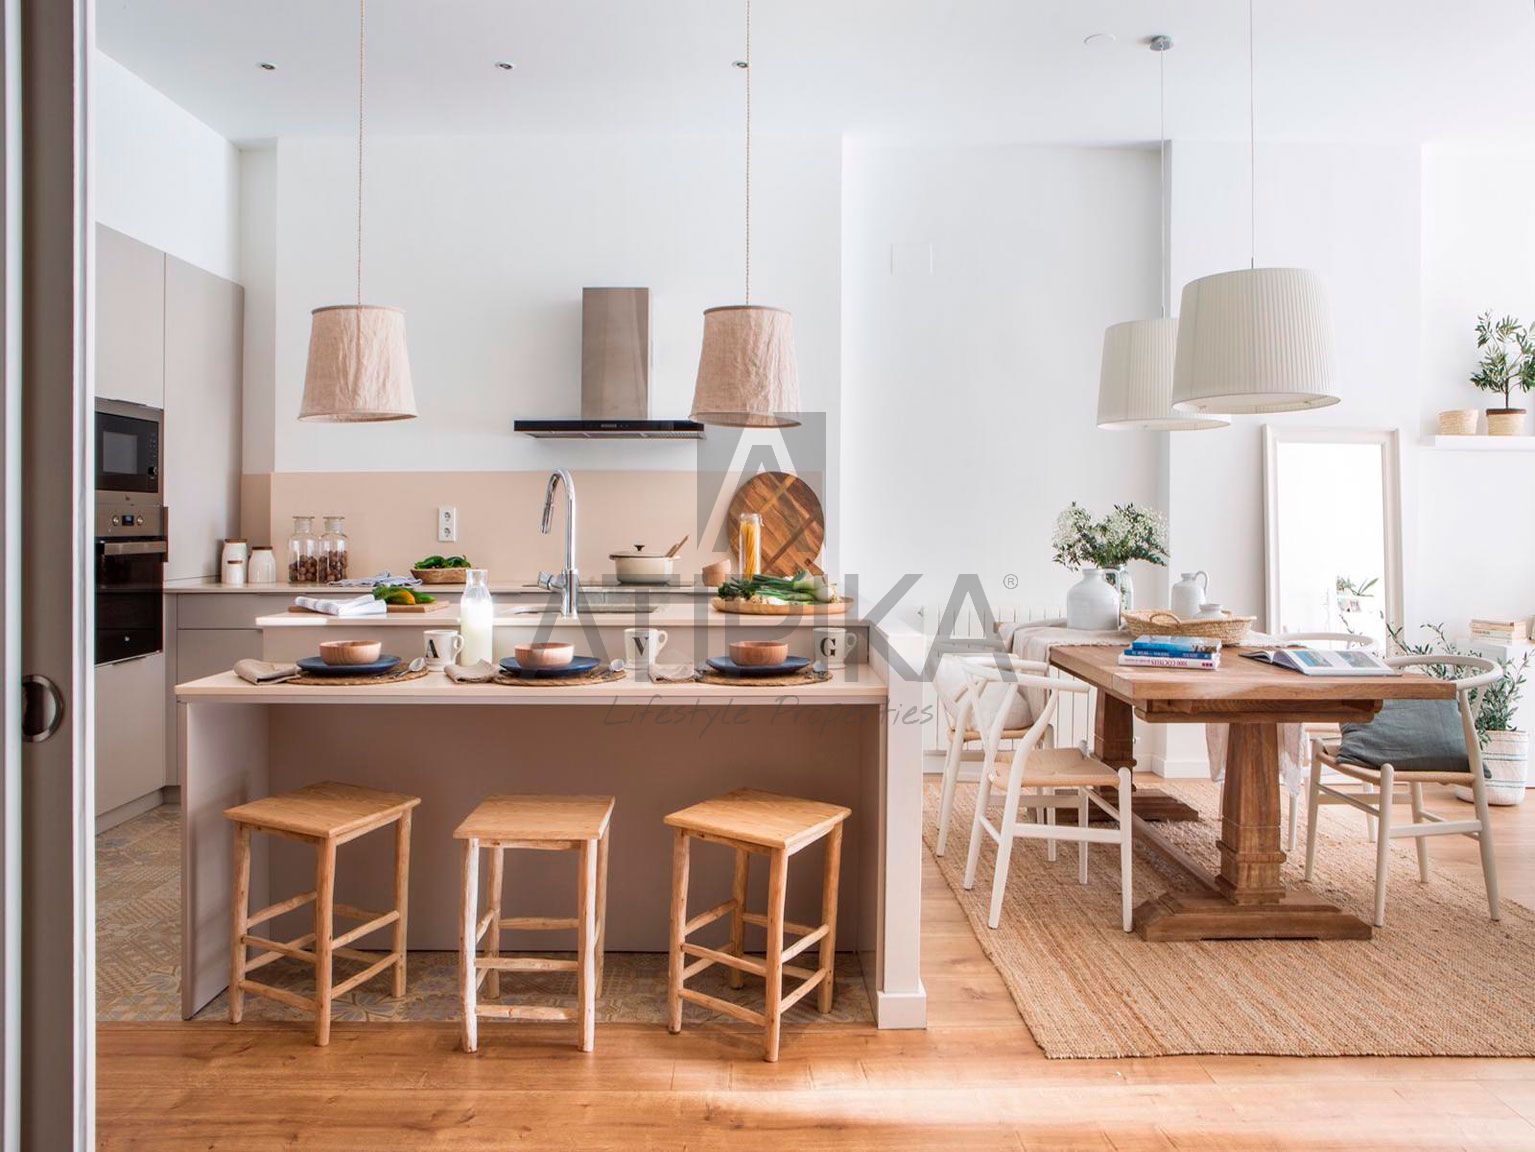 El privilegio de vivir en la zona alta de Barcelona - Atipika Lifestyle Properties 2022